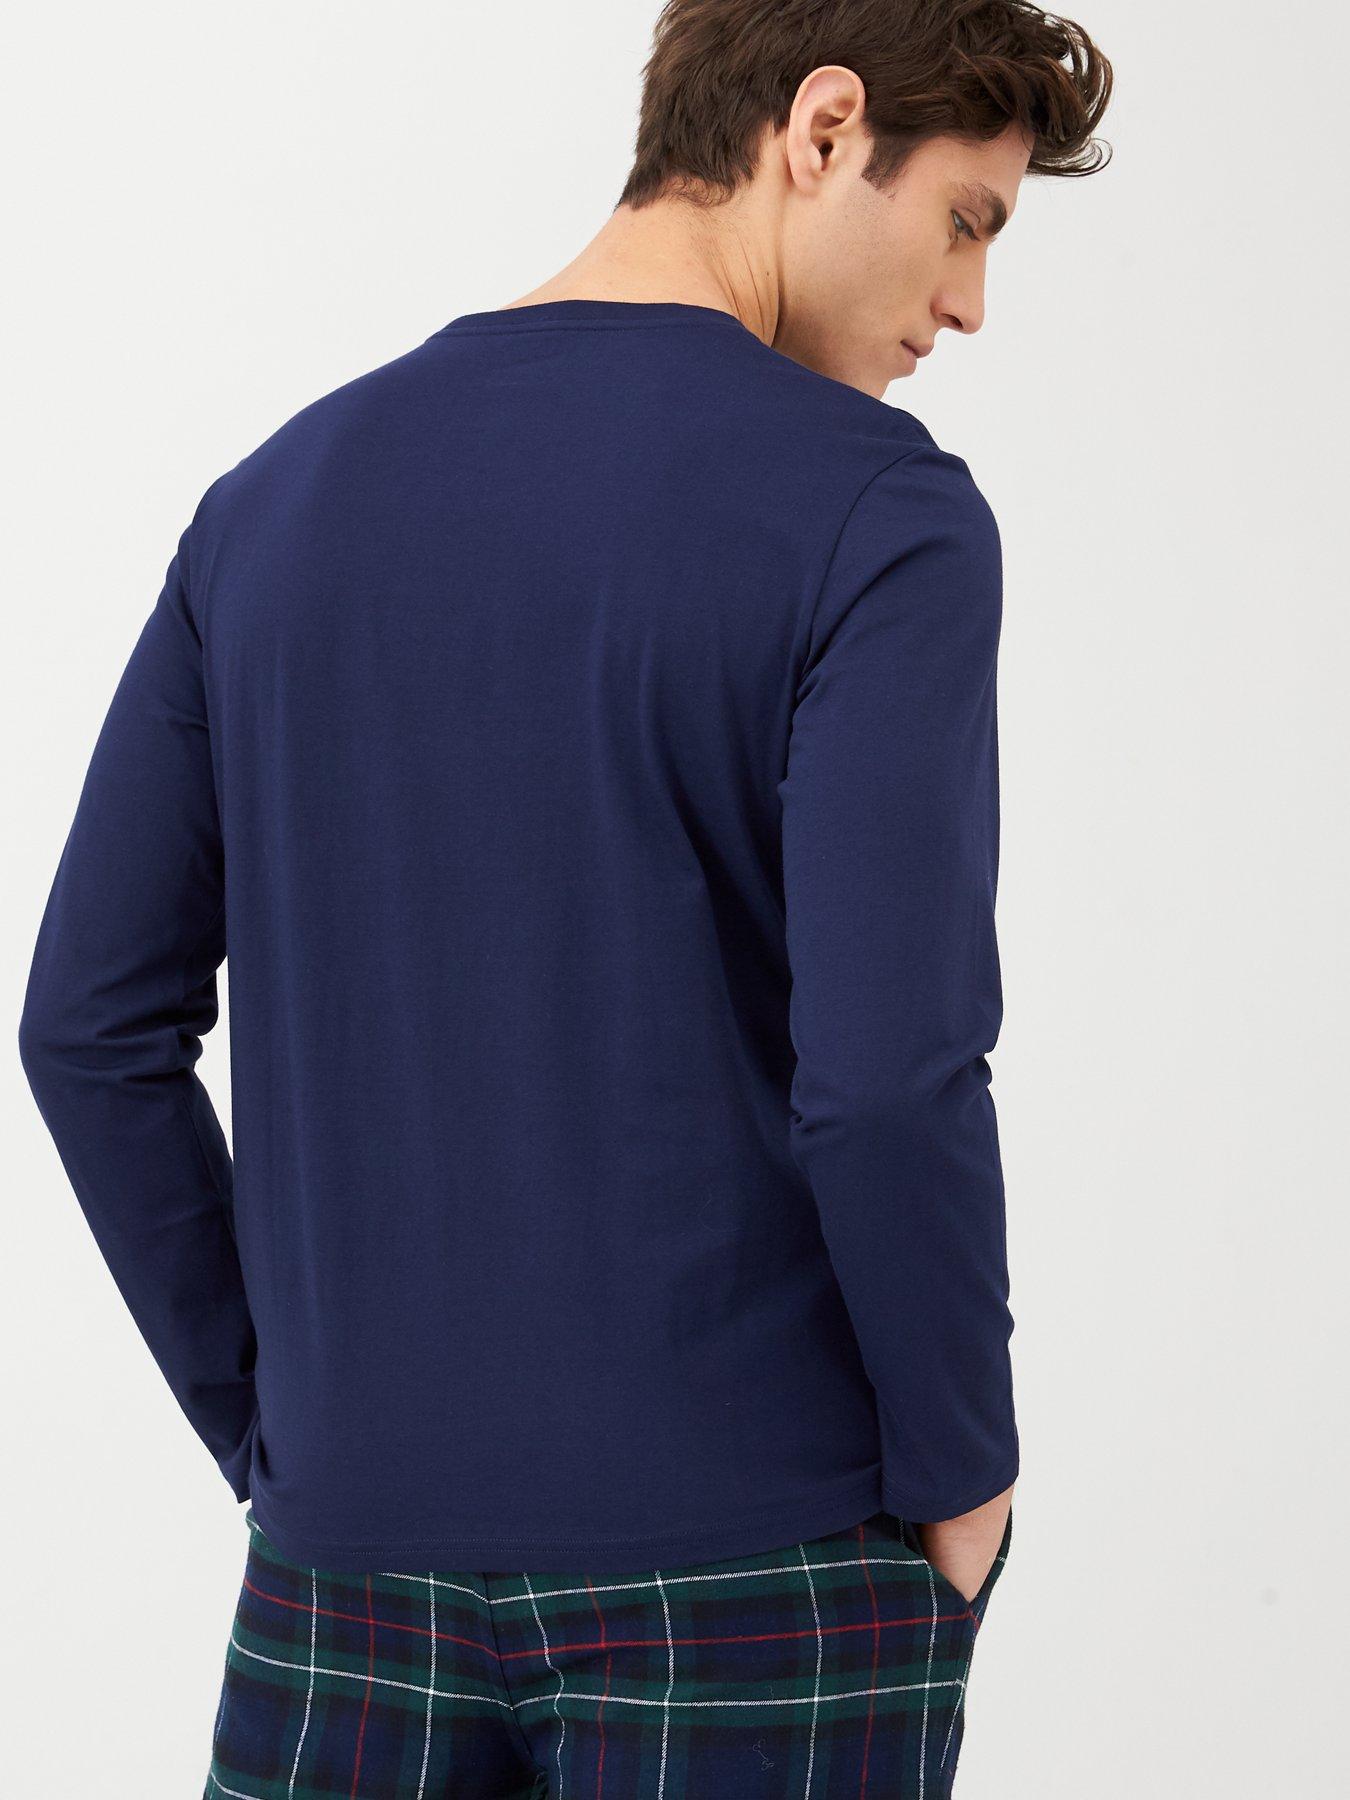 Polo Ralph Lauren Long Sleeved Lounge T-Shirt - Navy 